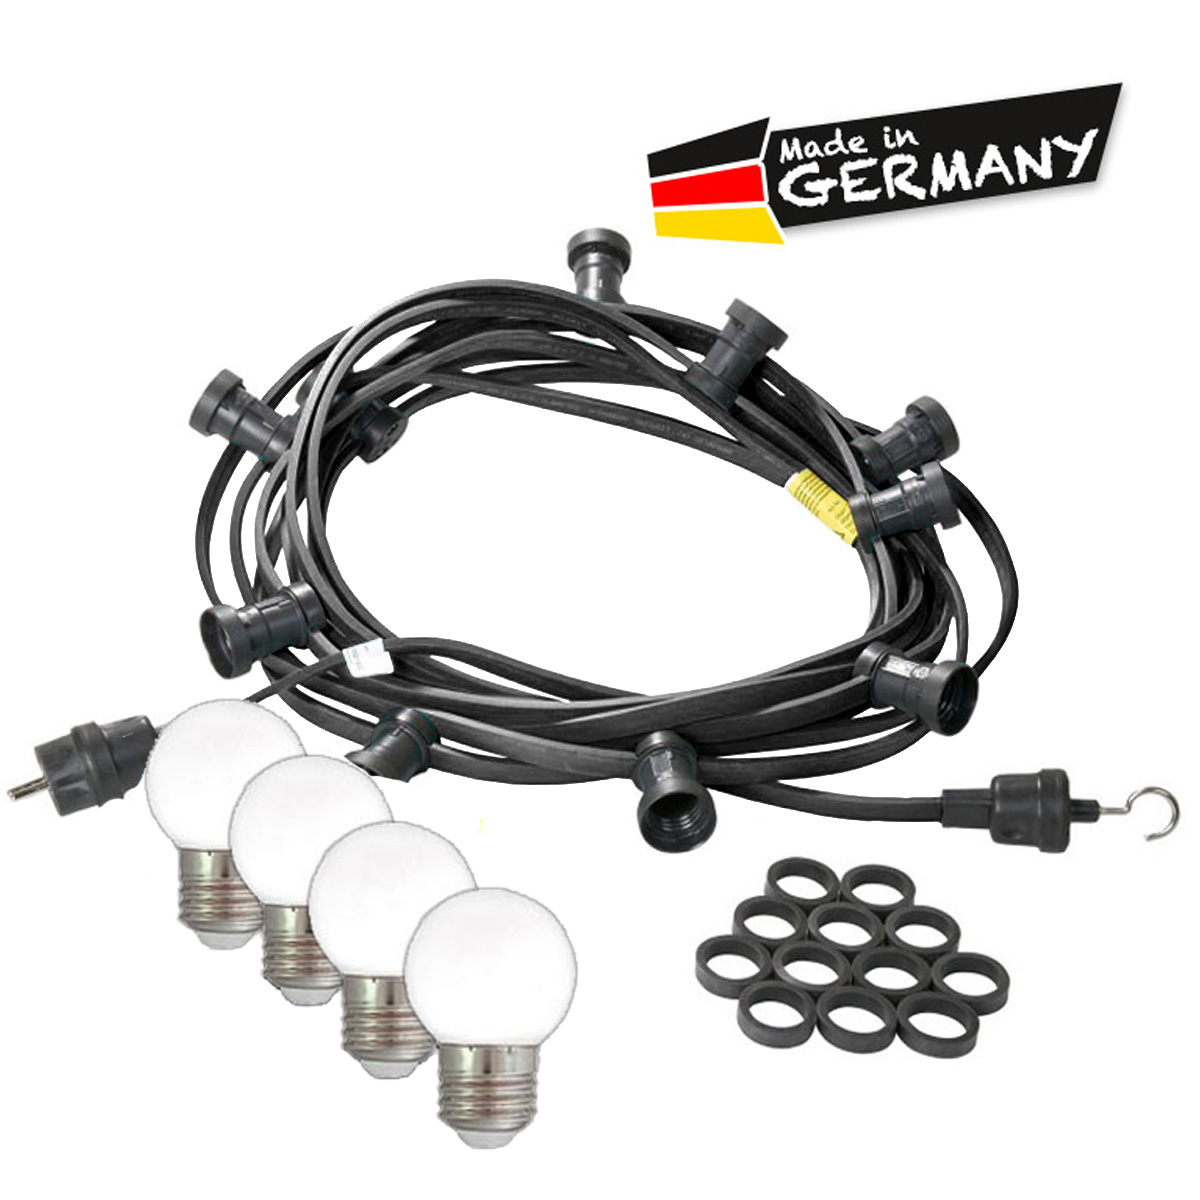 Illu-/Partylichterkette 5m - Außenlichterkette schwarz - Made in Germany 5 warmweiße LED Kugellampen